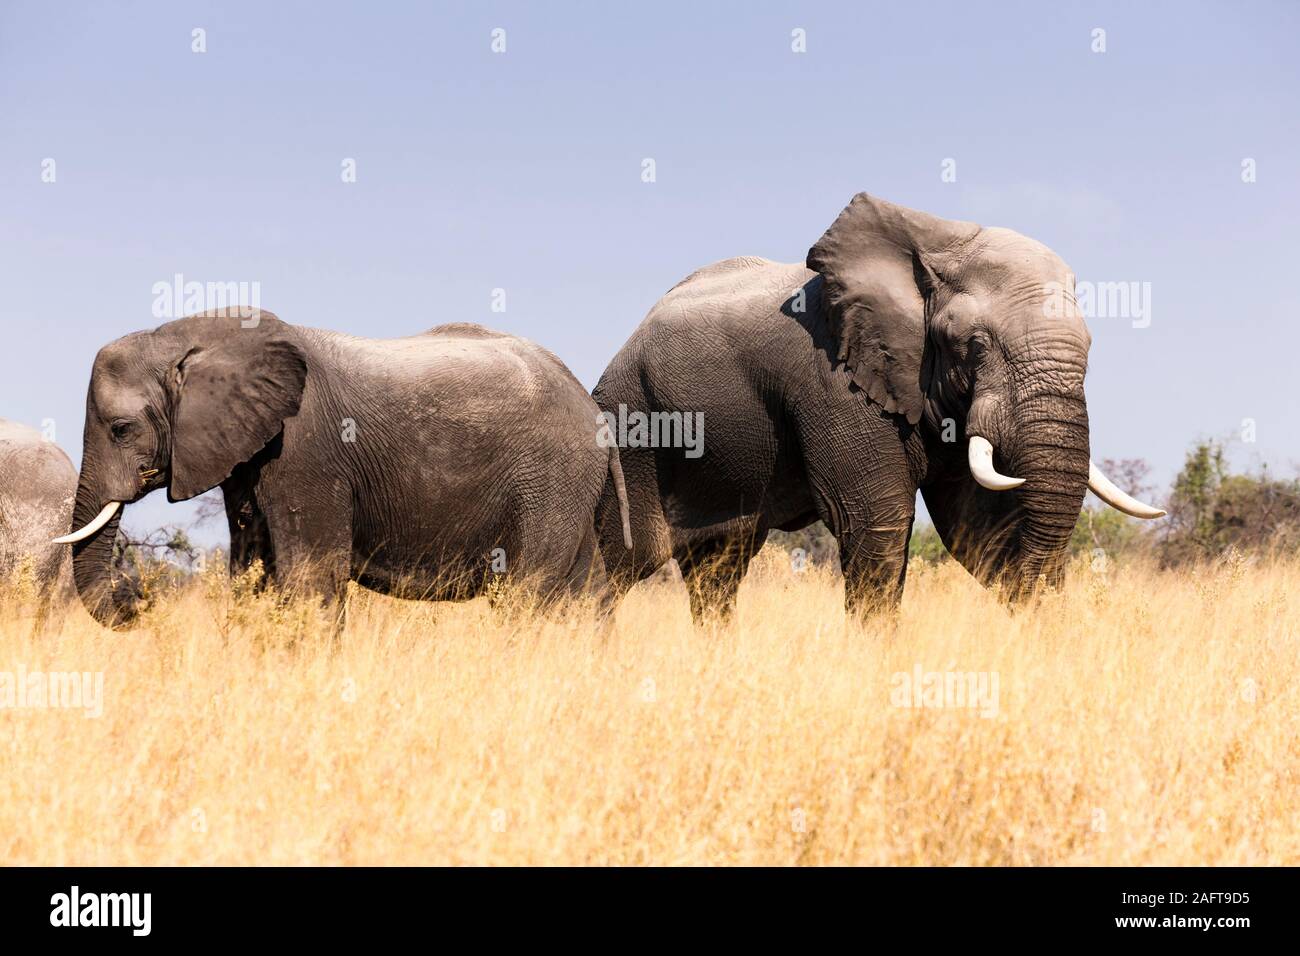 Éléphants mangeant de l'herbe, réserve de gibier de Moremi, delta d'Okavango, Botswana, Afrique australe, Afrique Banque D'Images